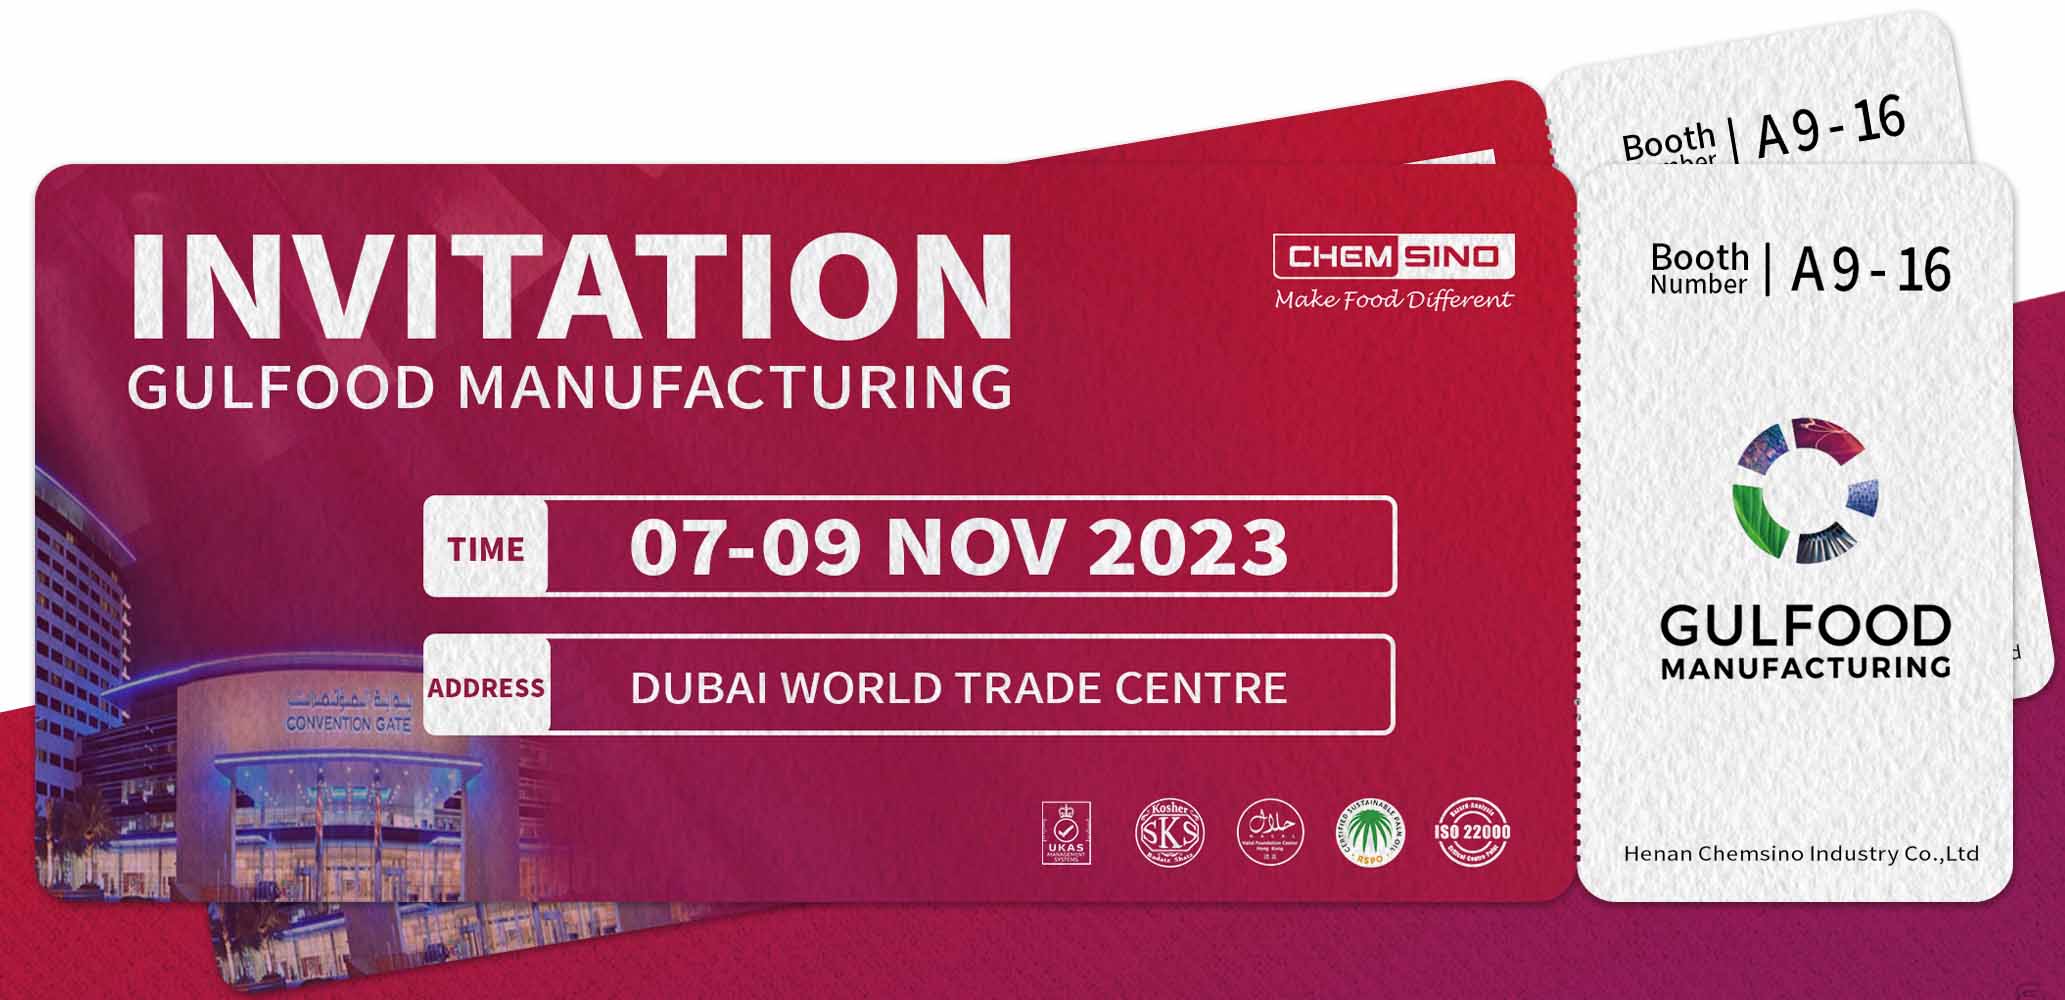 Gulfood Manufacturing Dubai 2023 Invitation